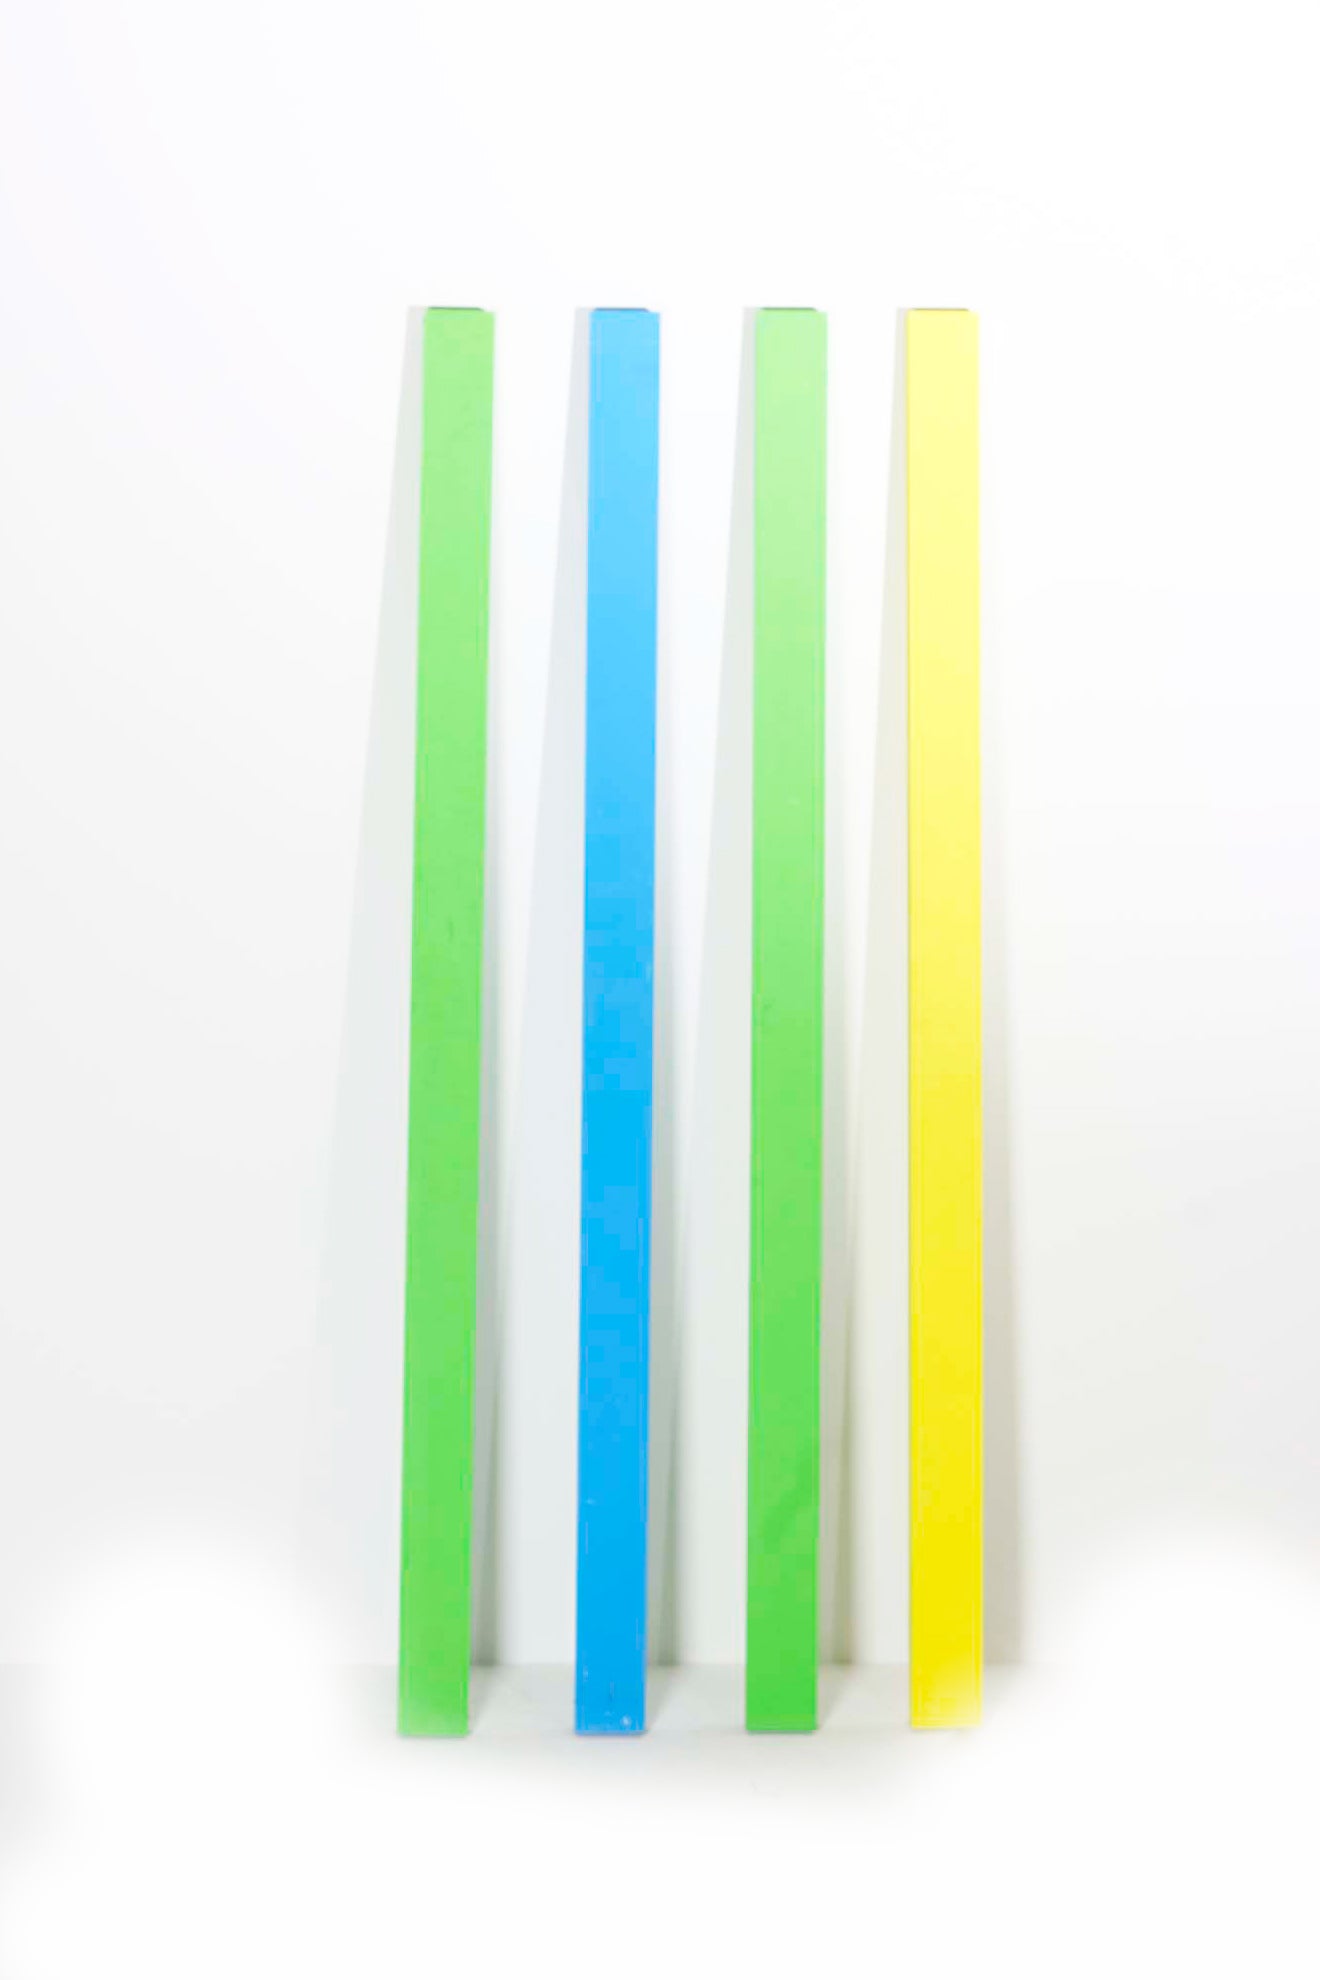 4 Piece Colour Panels for Backdrops & Set Design Purposes